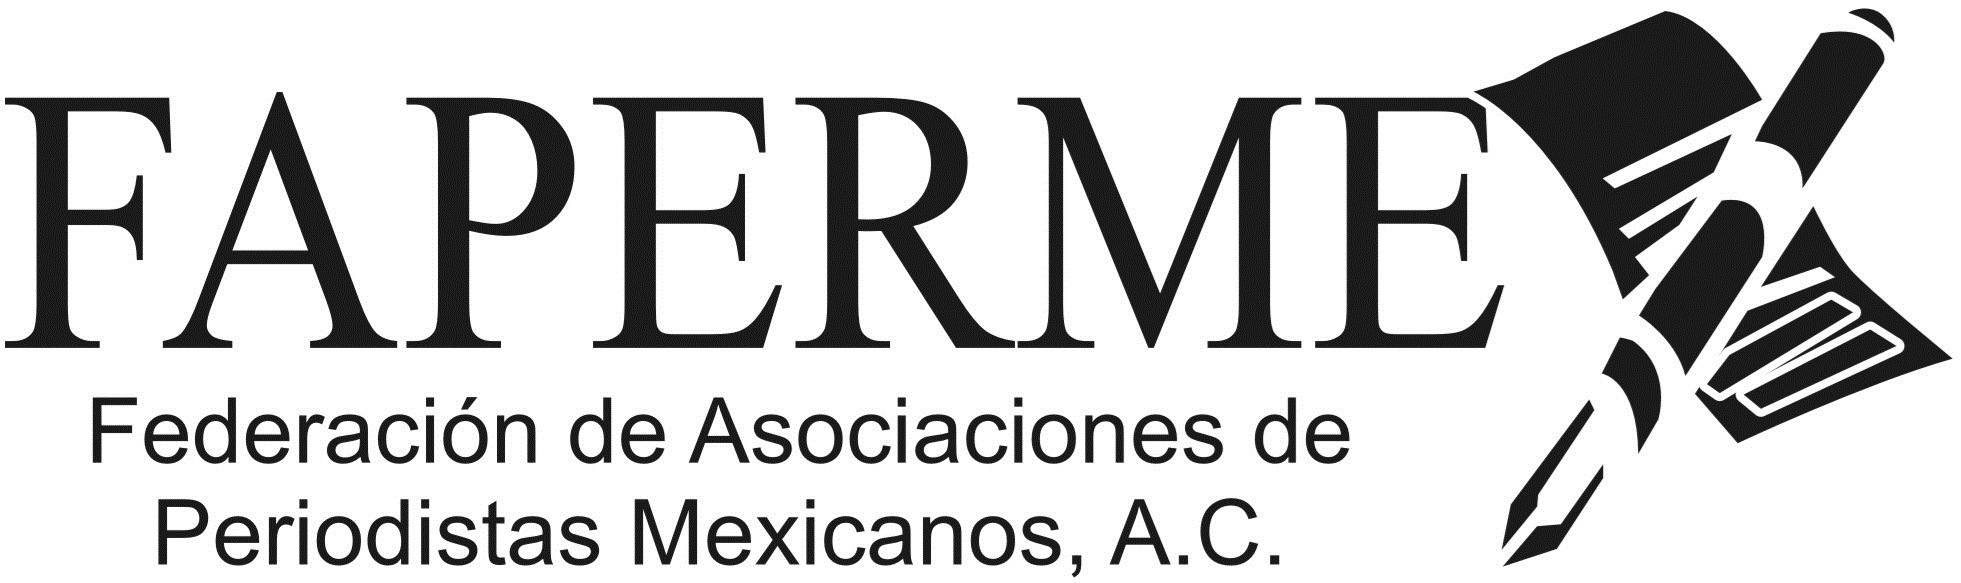 Federación de Asociaciones de Periodistas Mexicanos, AC., FAPERMEX,